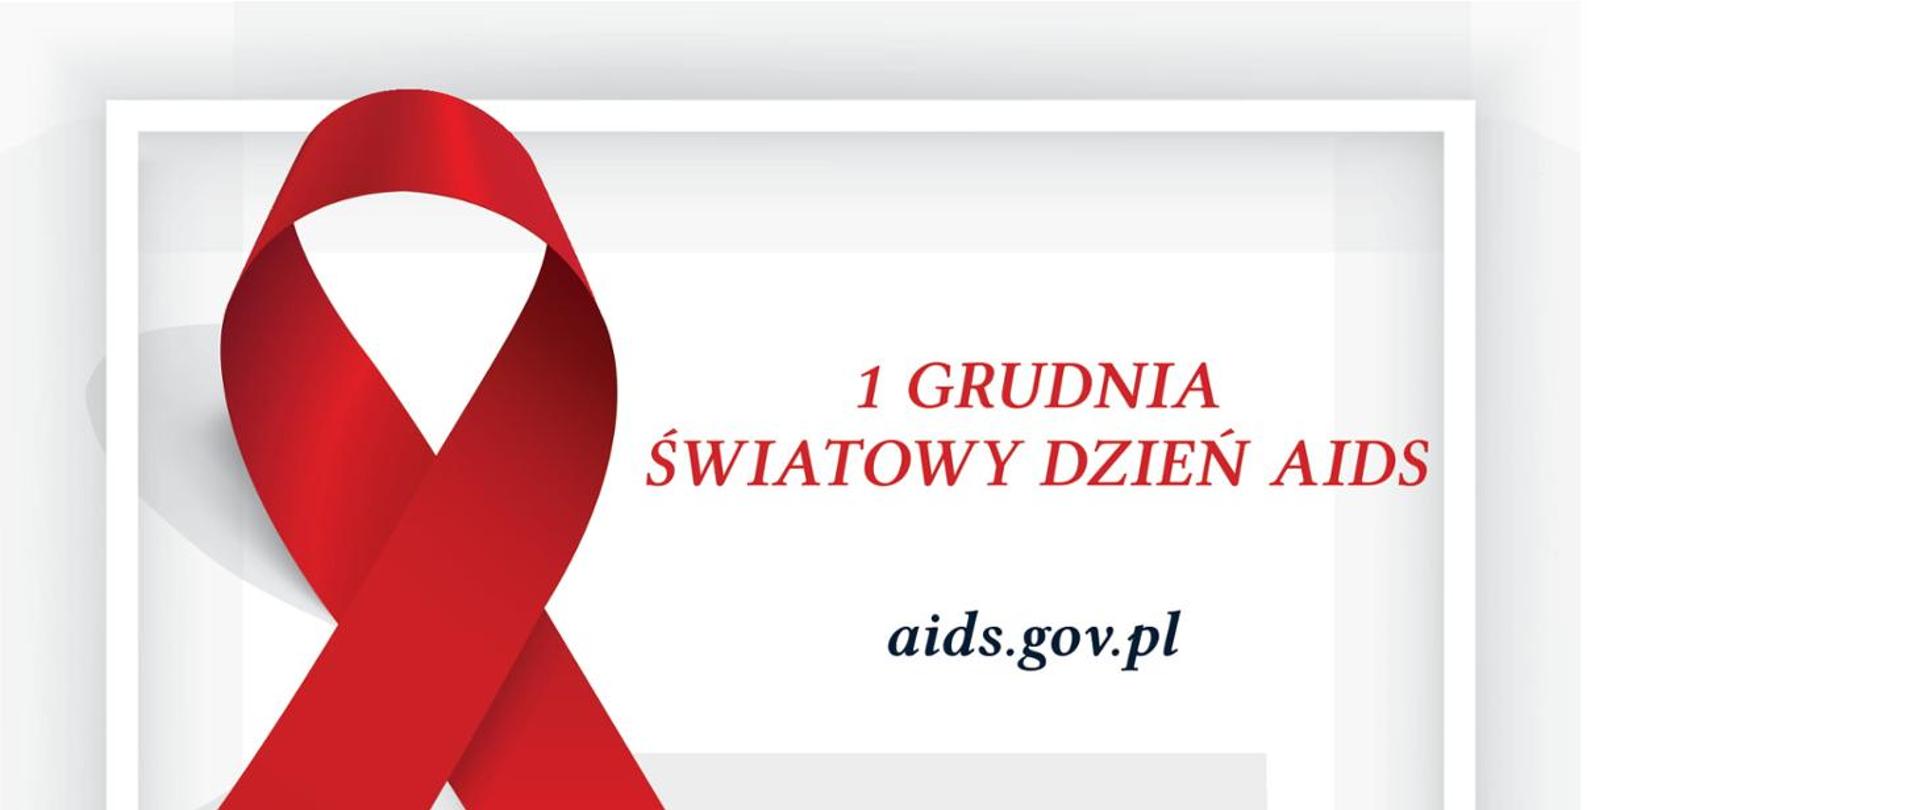 Na biały tle z lewej strony czerwona kokarda. Czerwony napis 1 Grudnia światowy dzień aids. Czarny napis aids.gov.pl